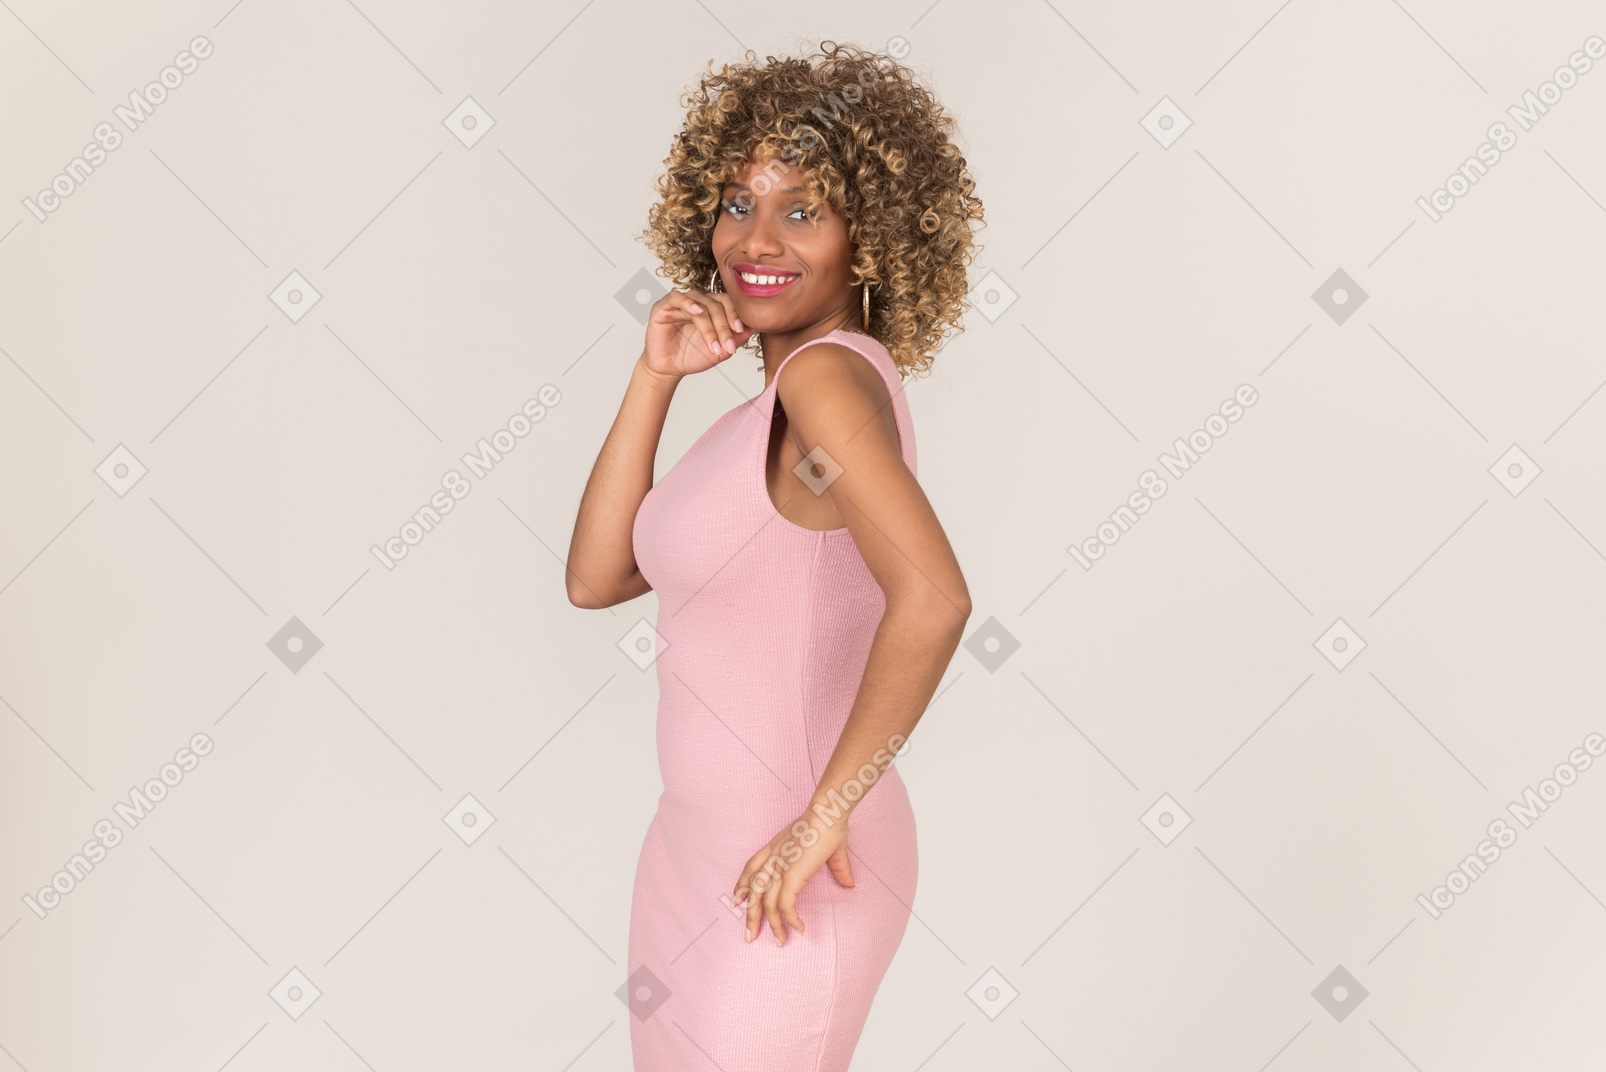 핑크 드레스를 입고 사진을 찍고 있는 여자